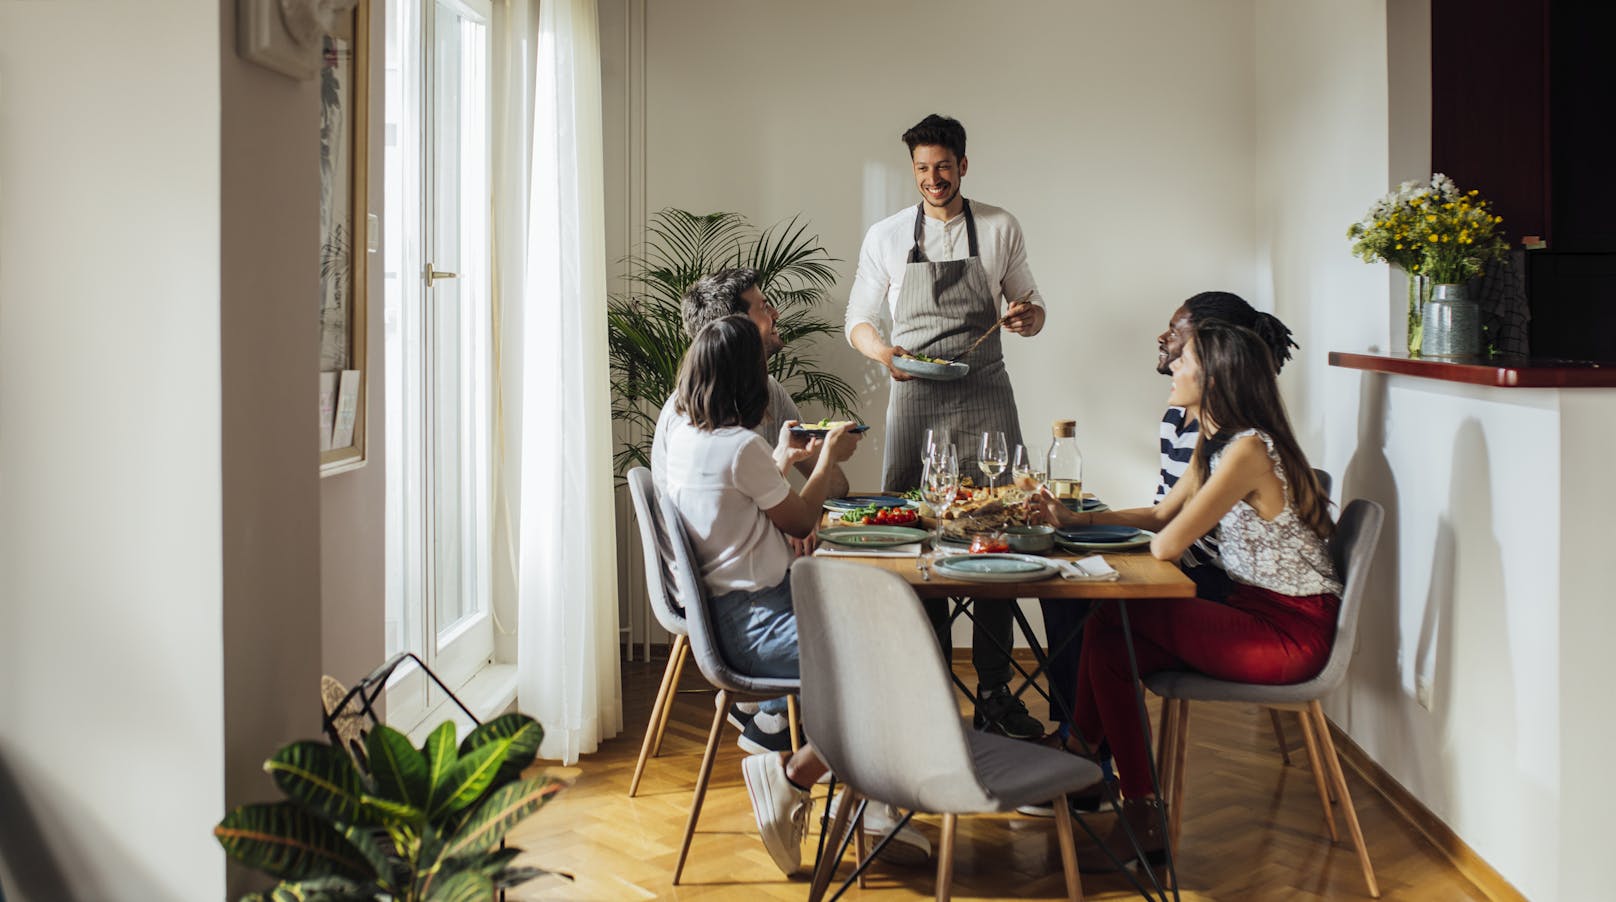 Eine kleine Brunch- oder Dinner-Runde im Familien- und Freundeskreis wirkt harmlos. 